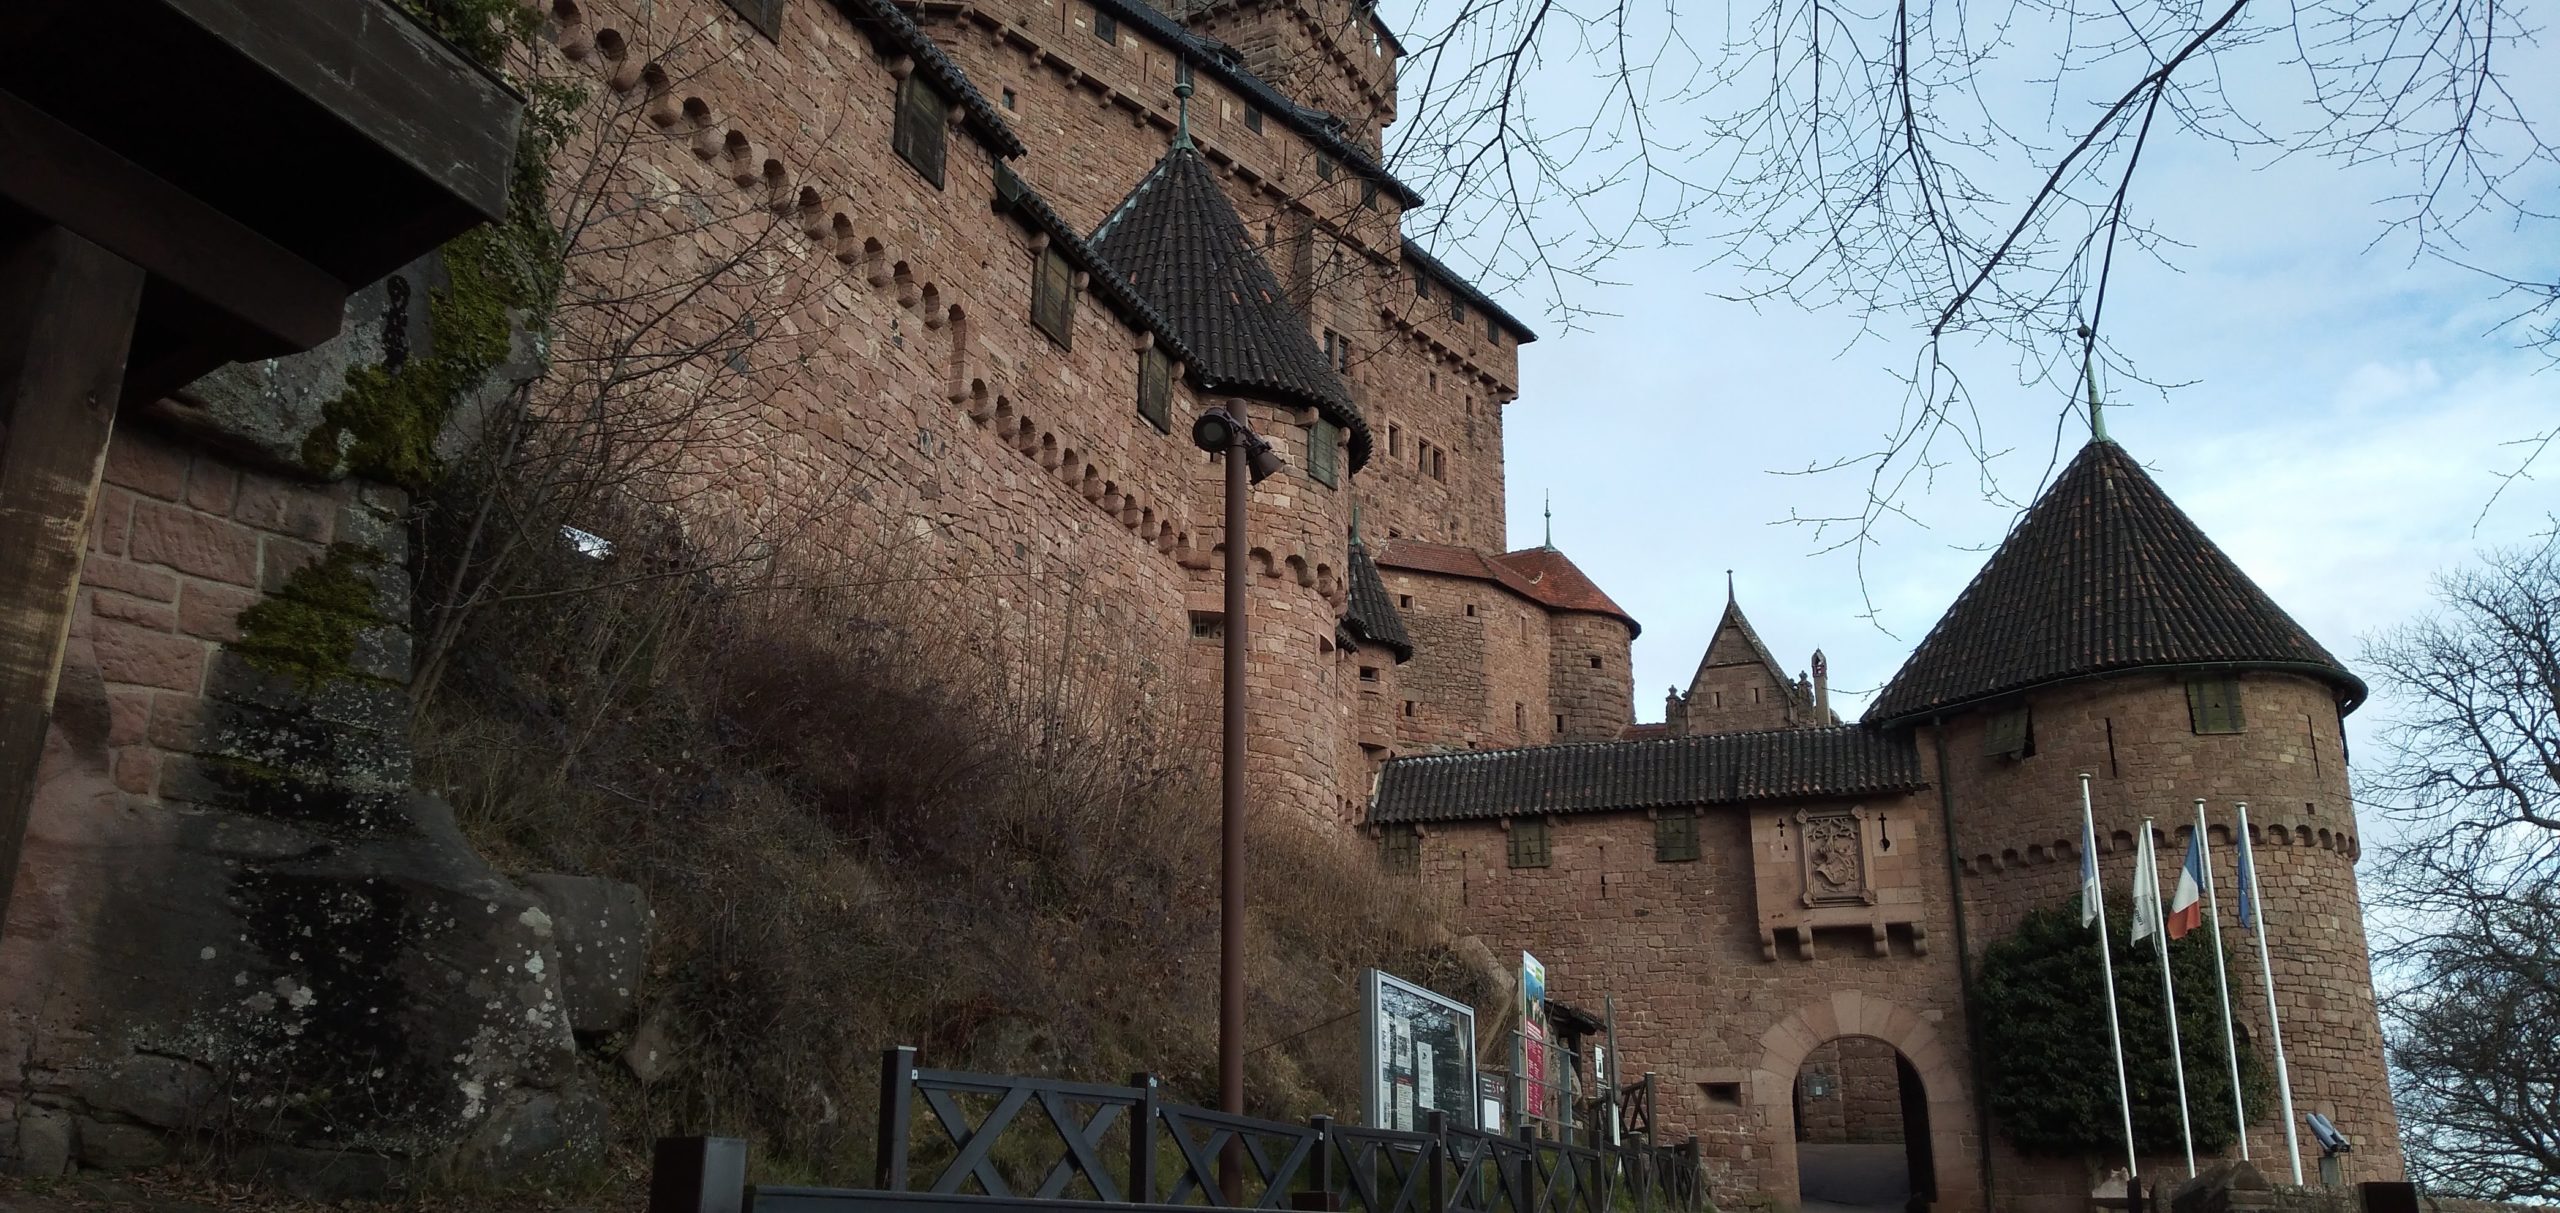 Entrée du Château du Haut-Koenigsbourg datant de janvier 20219 - Par Cendrine Miesch dite LaPtiteAlsacienne